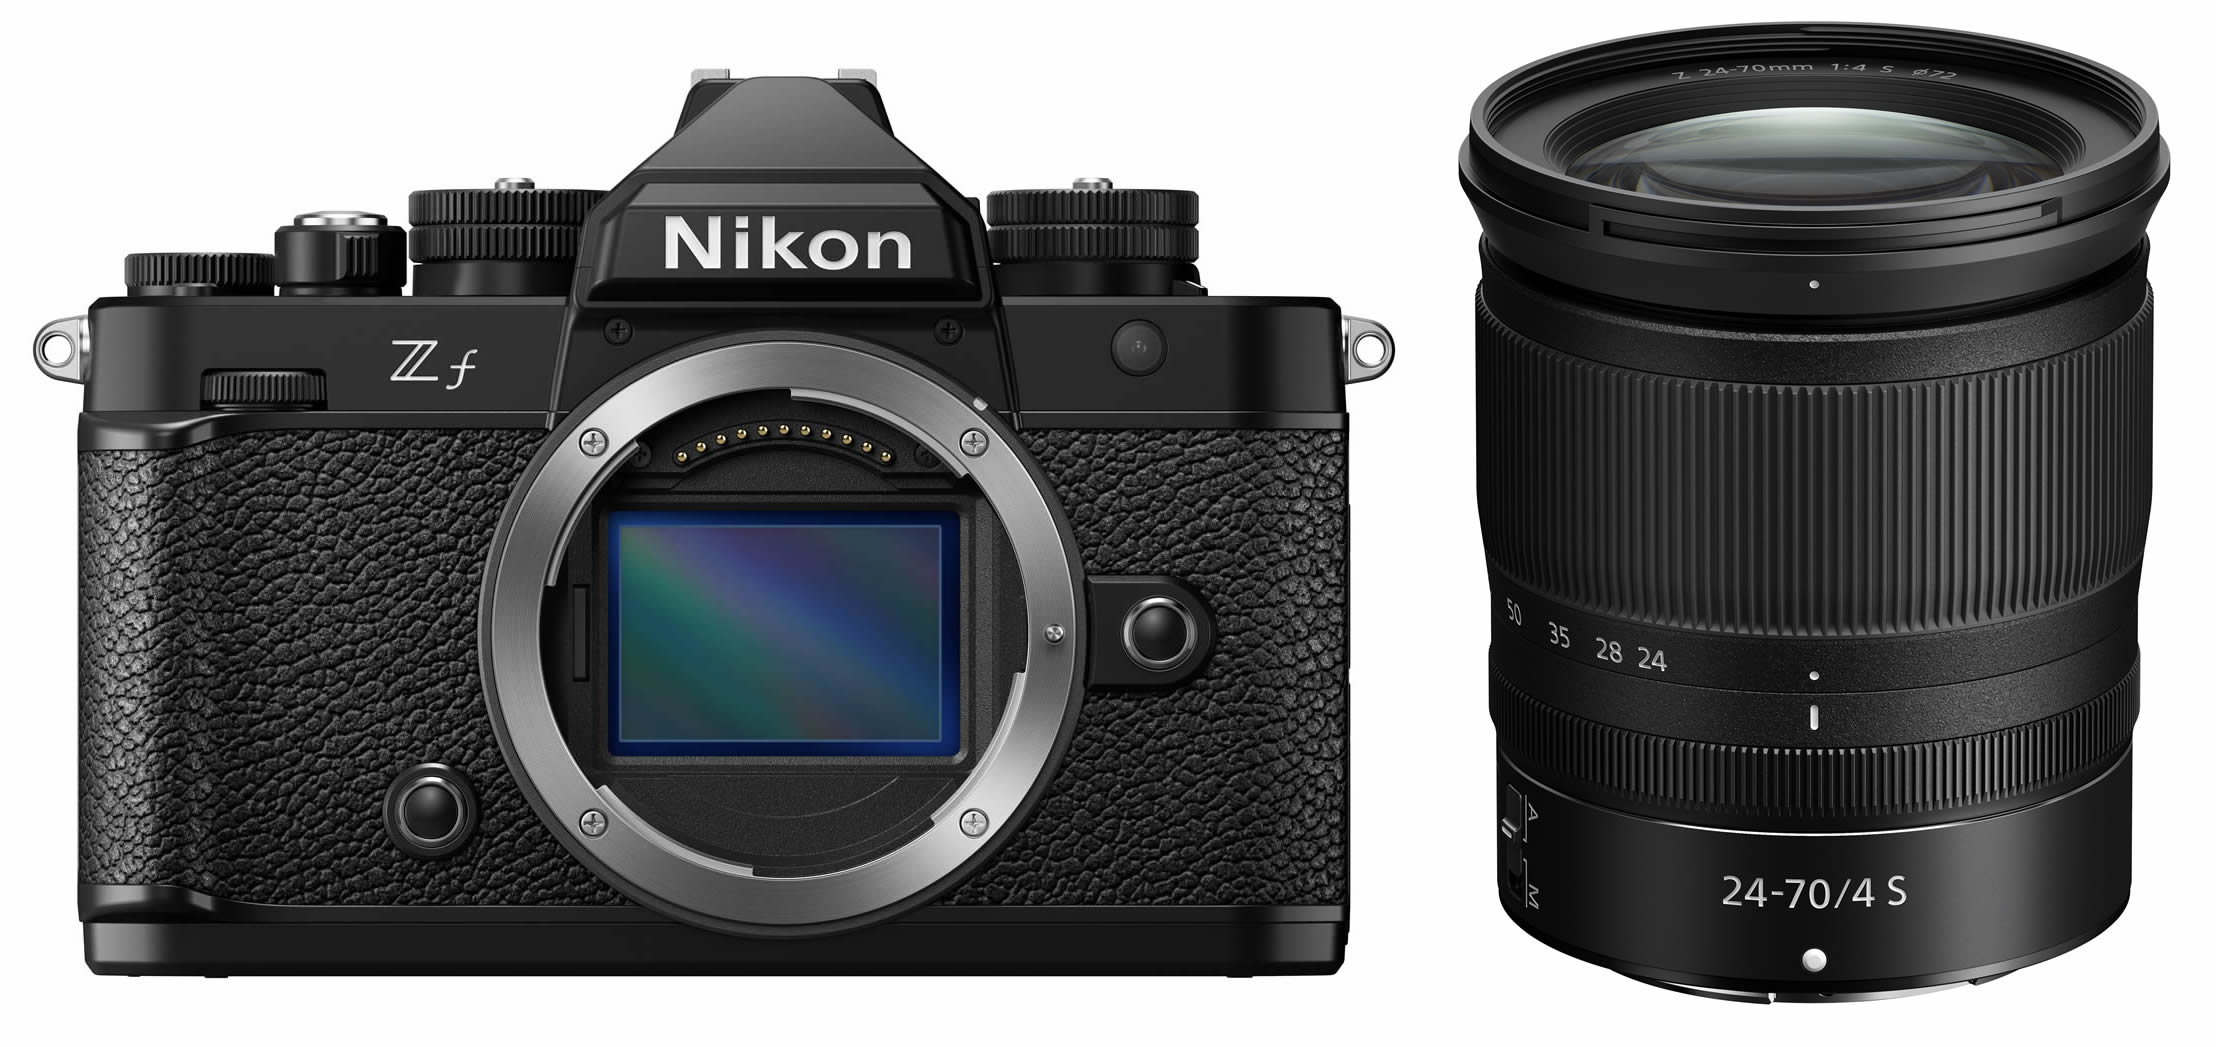 Nikon Z f Kit 24-70mm/4,0 S - Tradition mit Vollformat- Design trifft Klassisches Fotofachgeschäft Objektiv